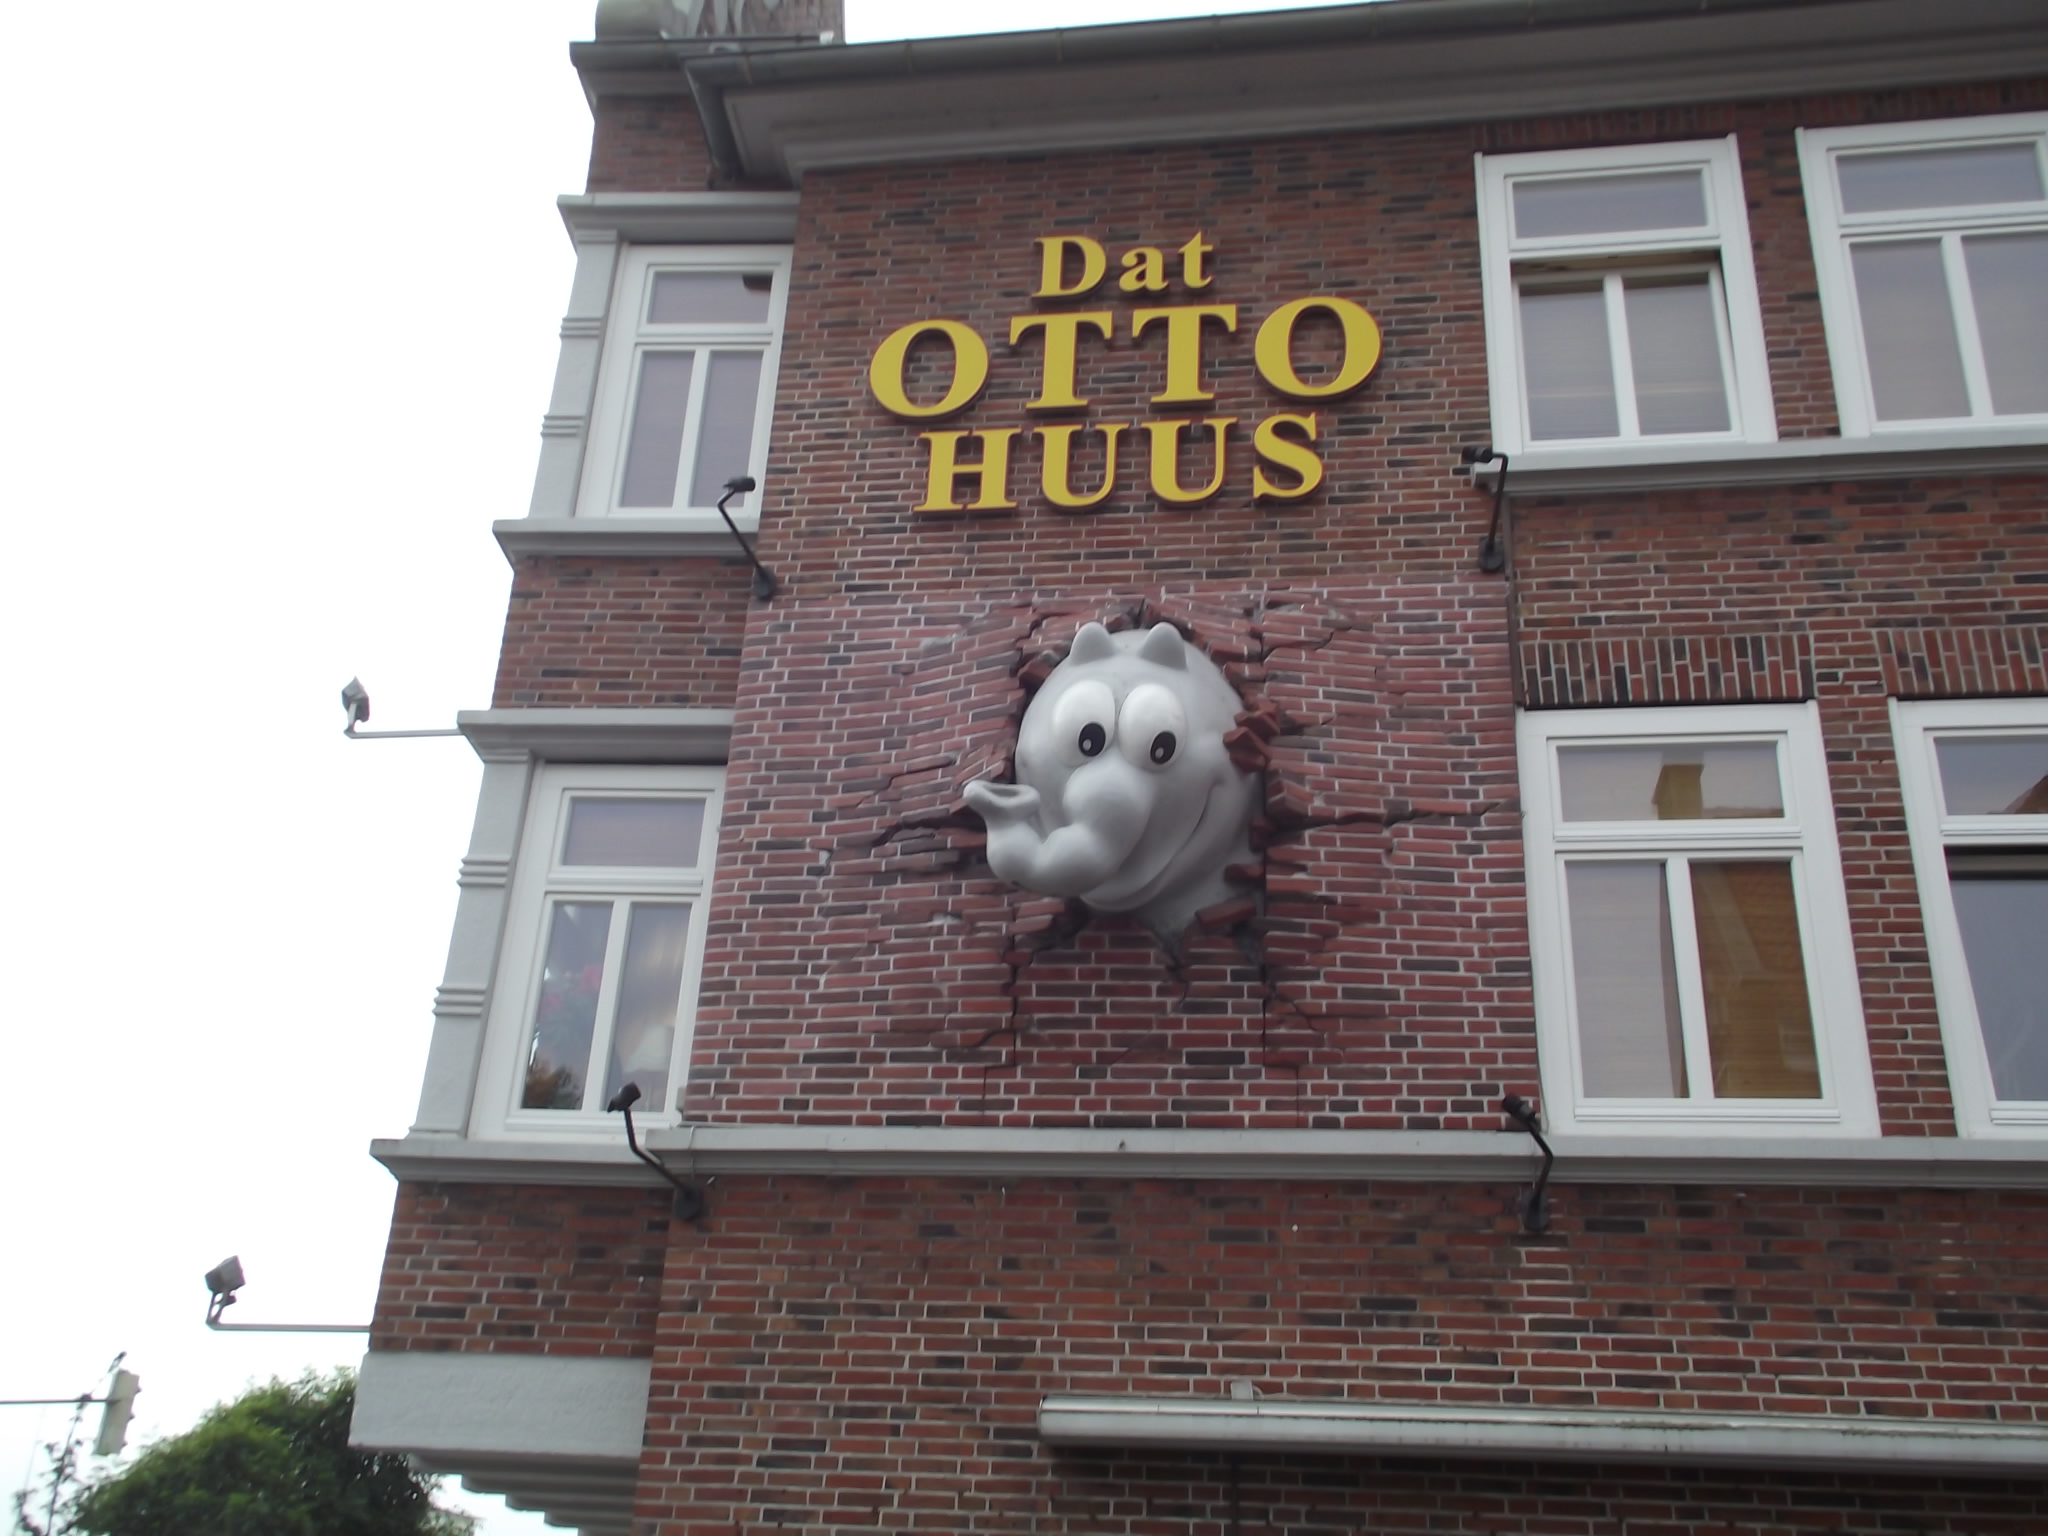 Dat Otto Huus in Emden - originelle Hauswand